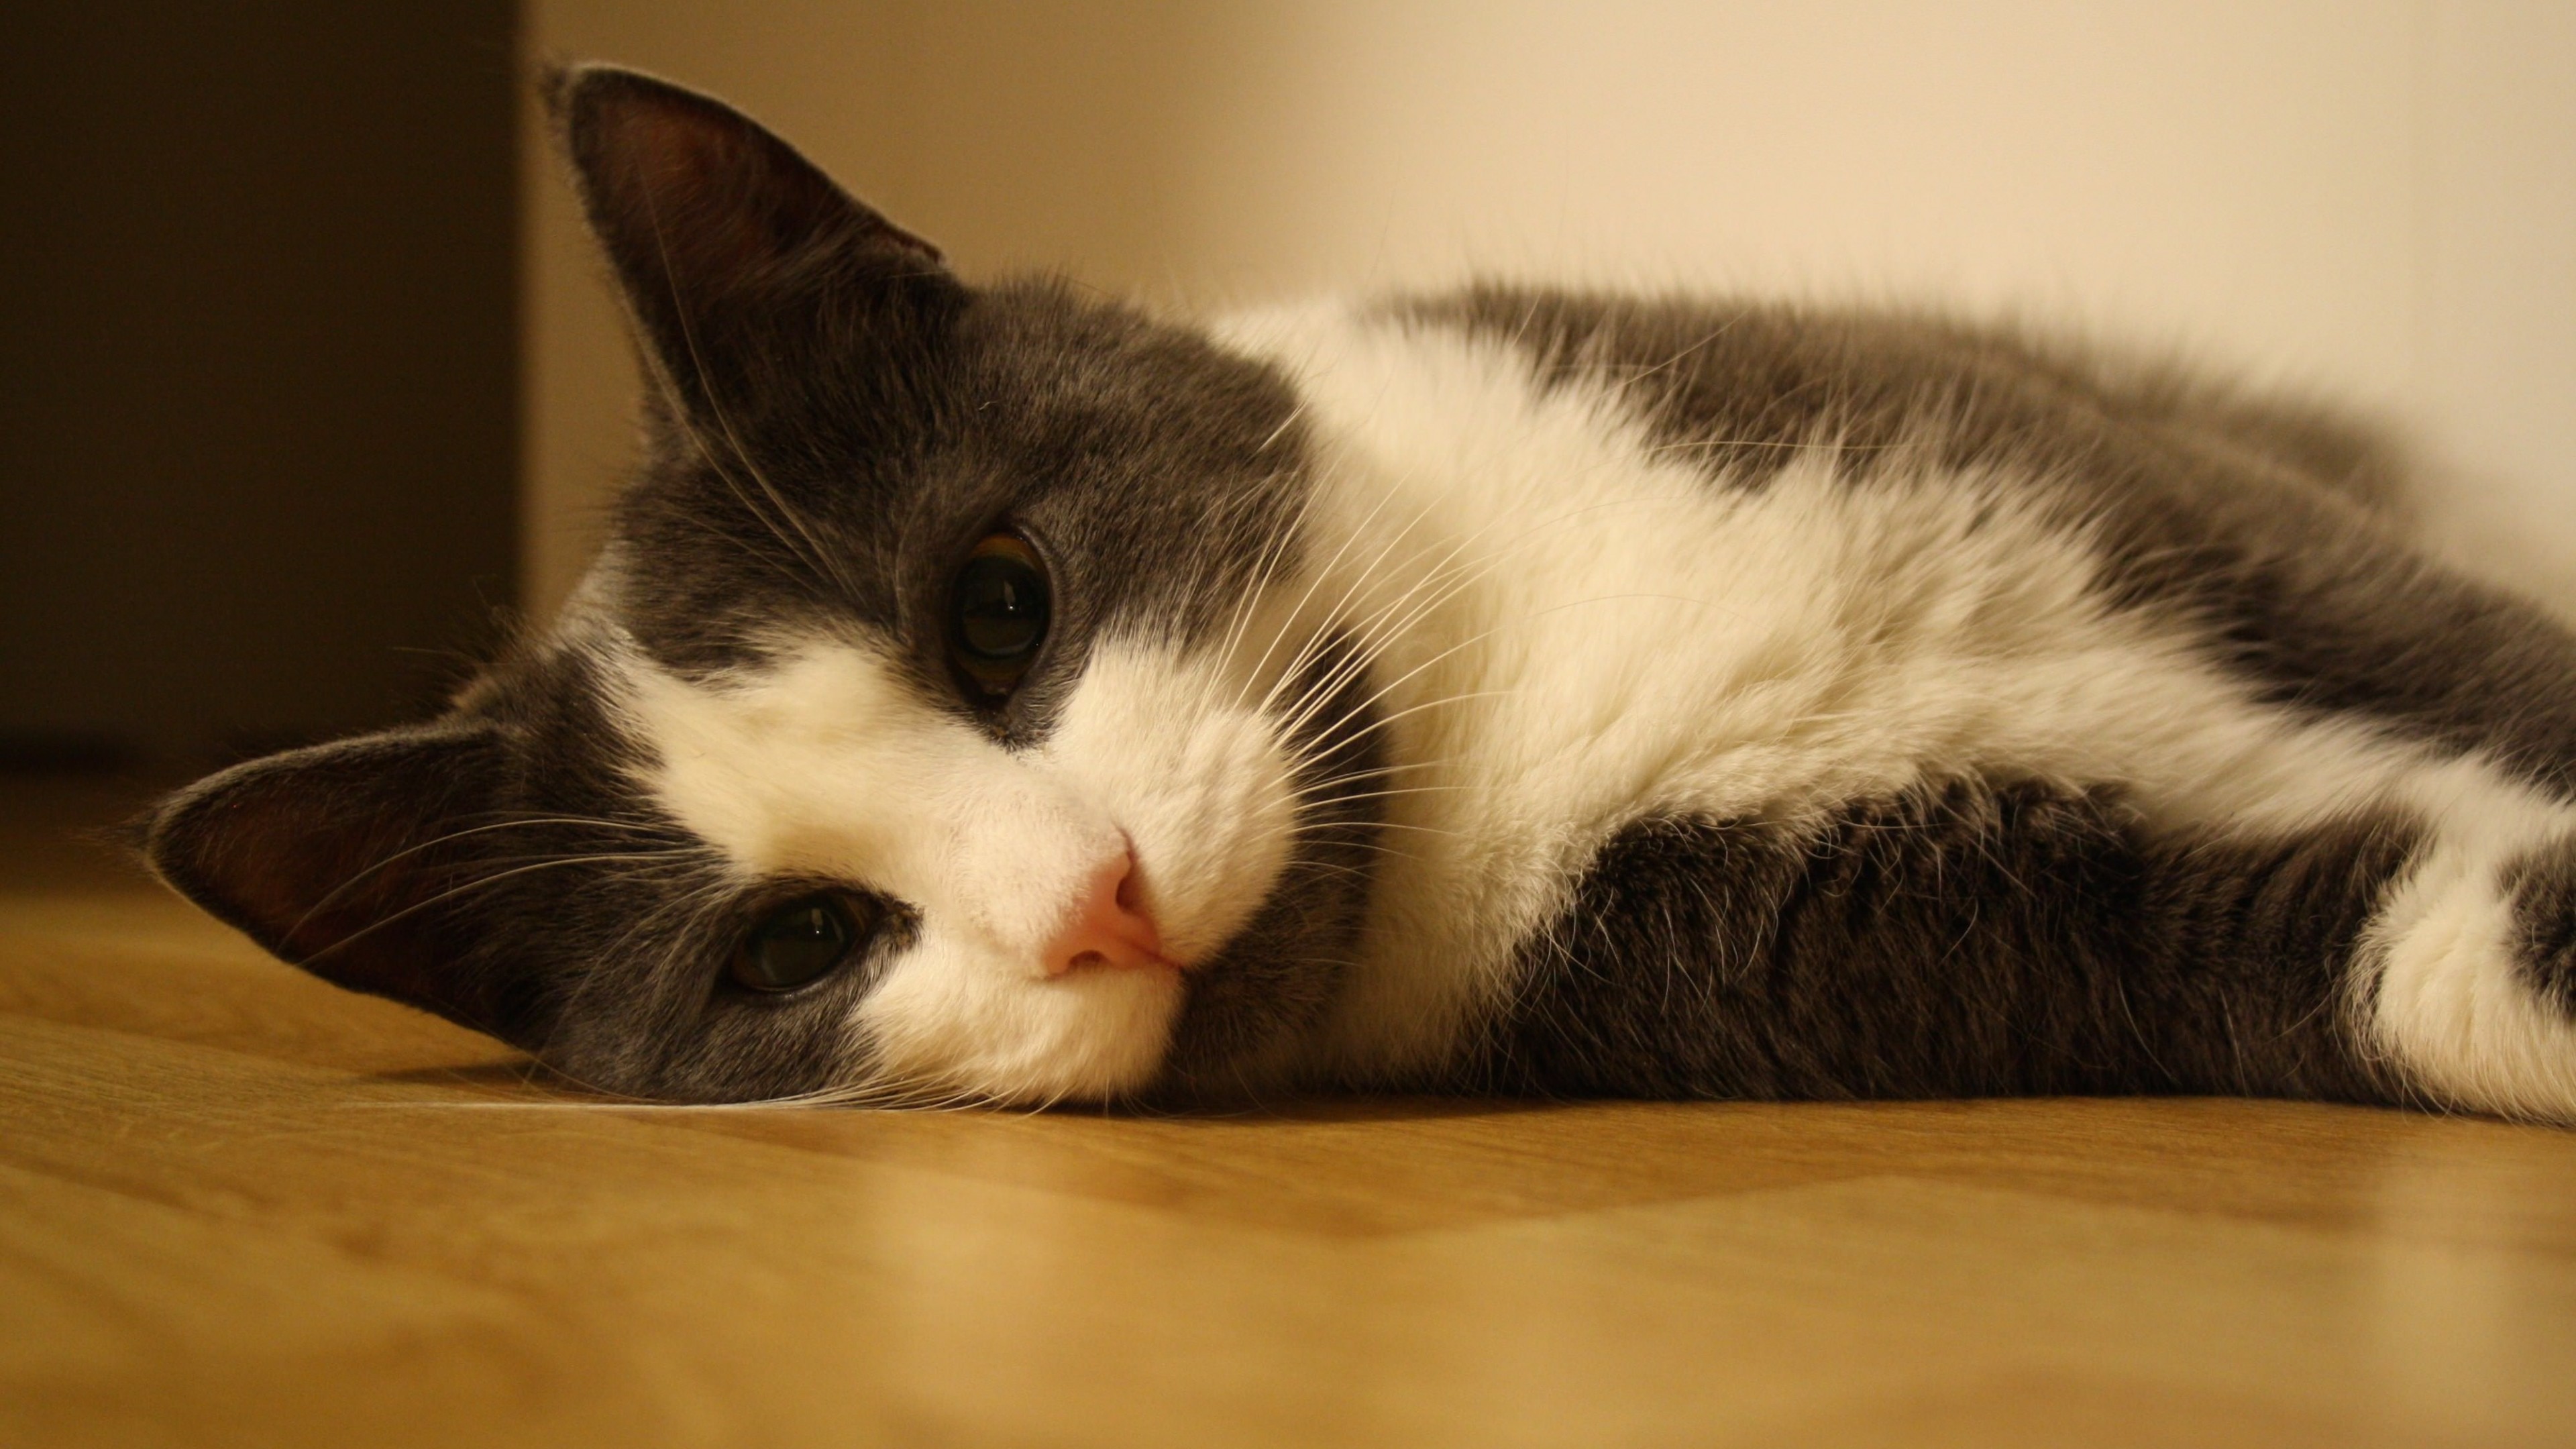 Sweet Cat Lying On The Floor Wallpaper for Desktop 4K 3840x2160